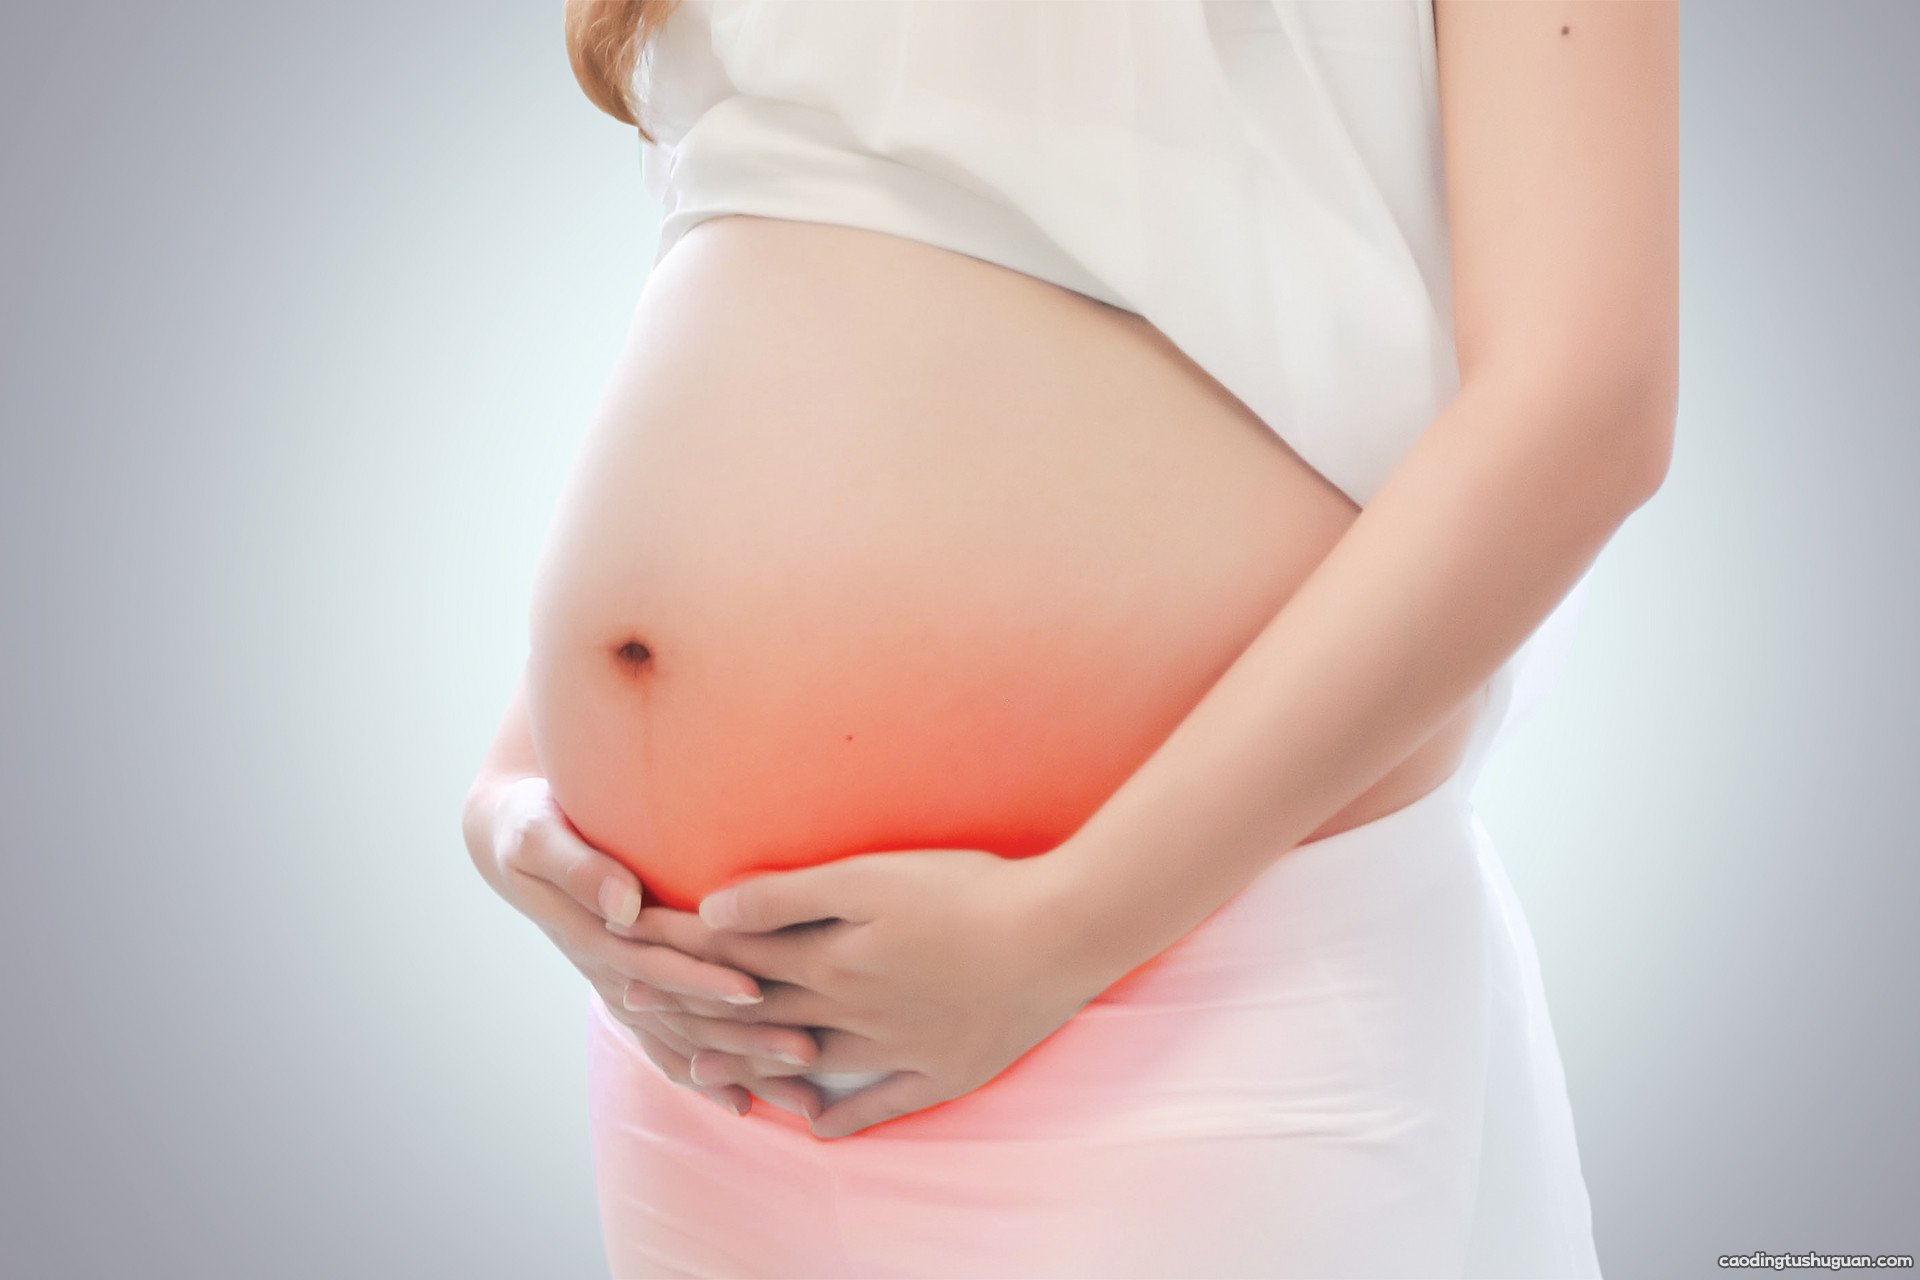 怀孕七个月胎儿的发育标准